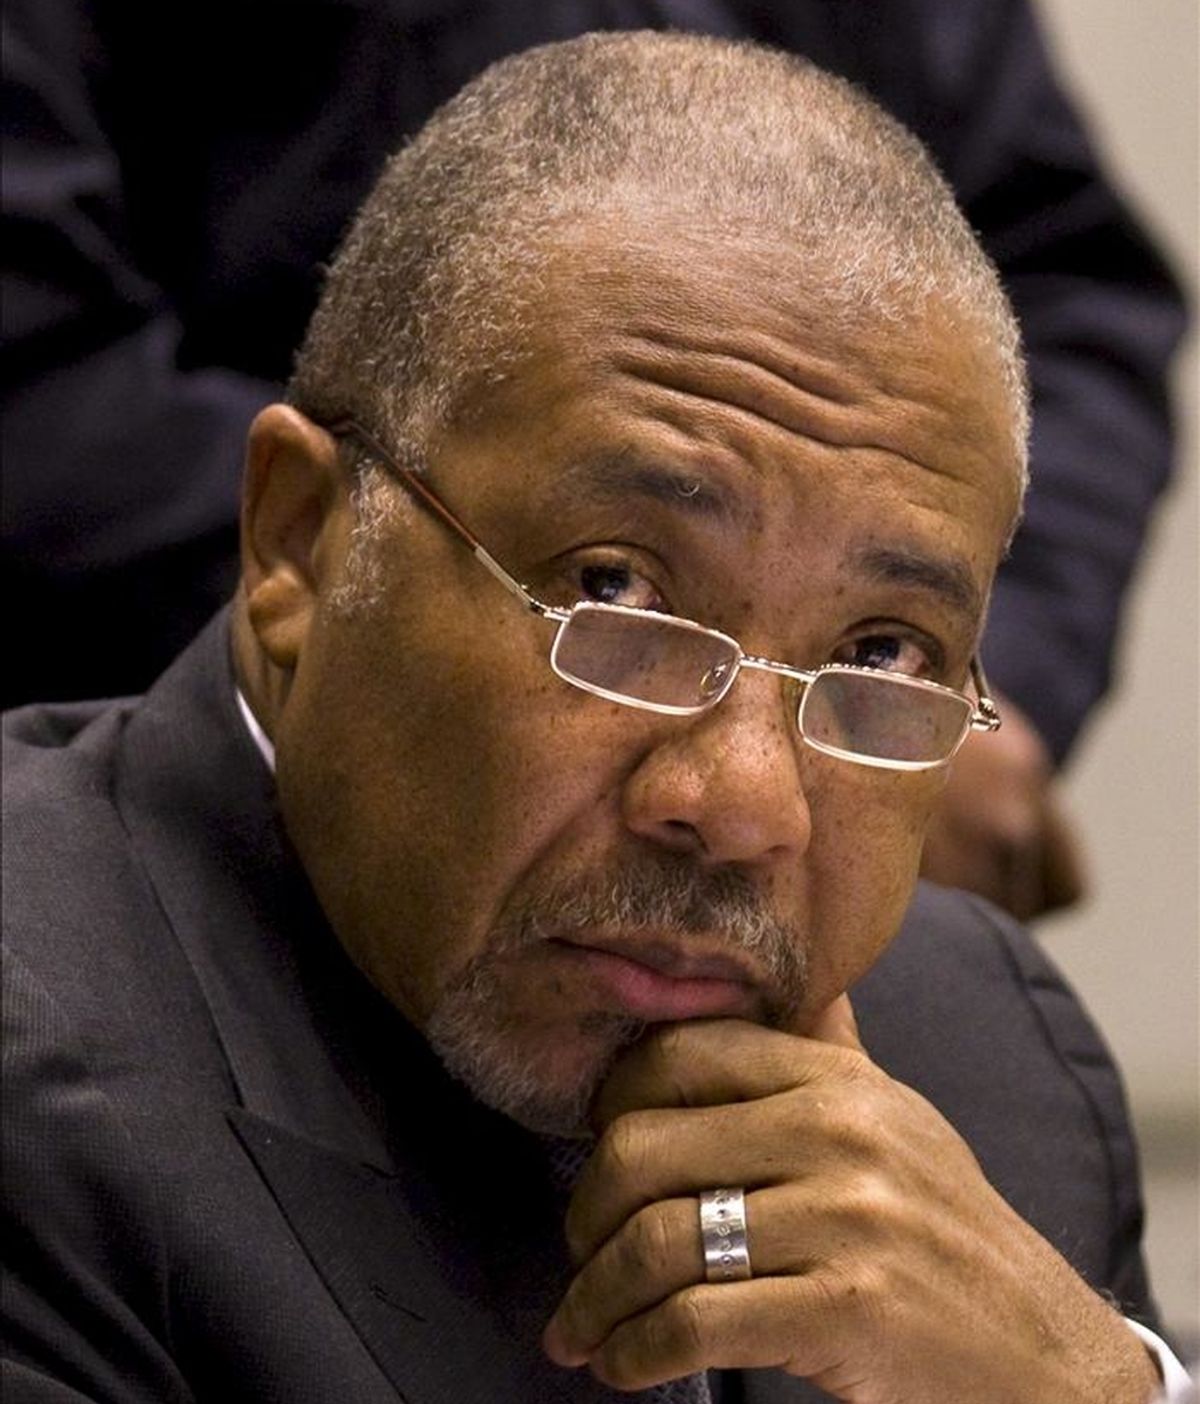 El ex presidente de Liberia Charles Taylor ayer, 8 de febrero, durante el inicio de la sesión de su juicio en el Tribunal Especial para Sierra Leona (TESL) en Leidschendam (Holanda). EFE